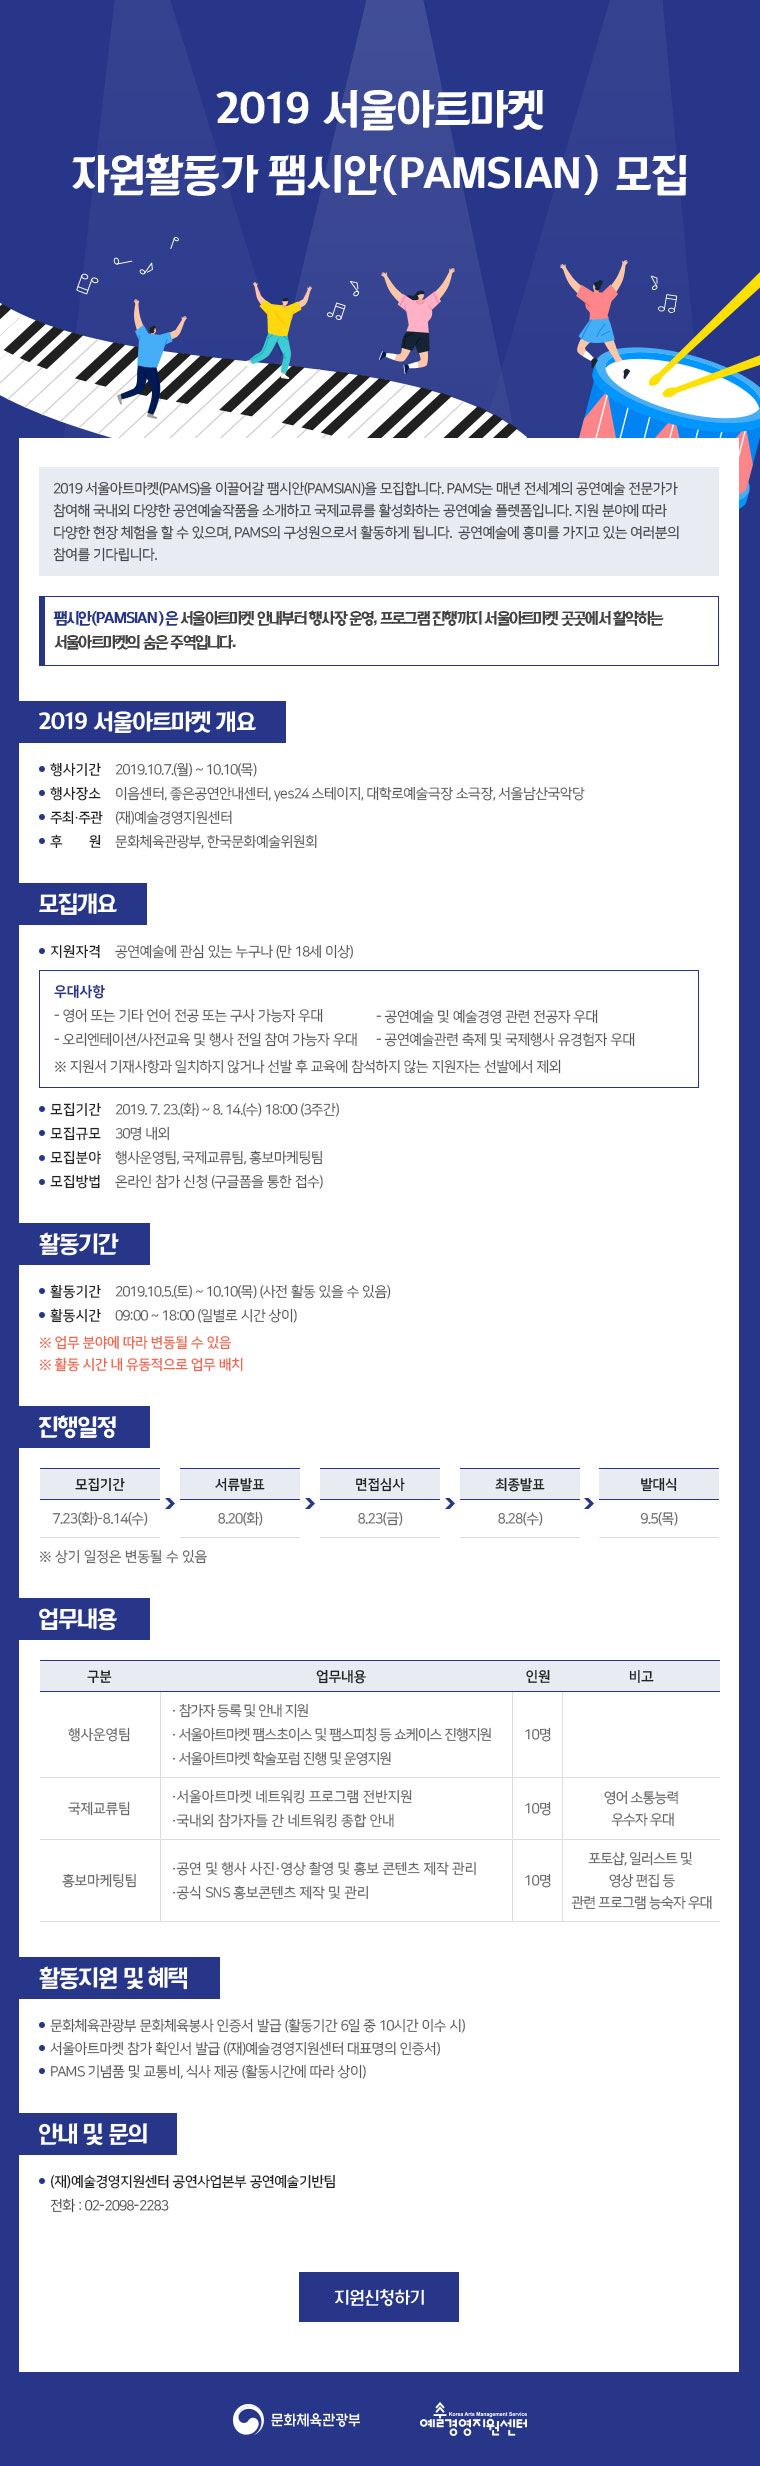 2019 서울아트마켓 자원활동가 팸시안(PAMSIAN) 모집